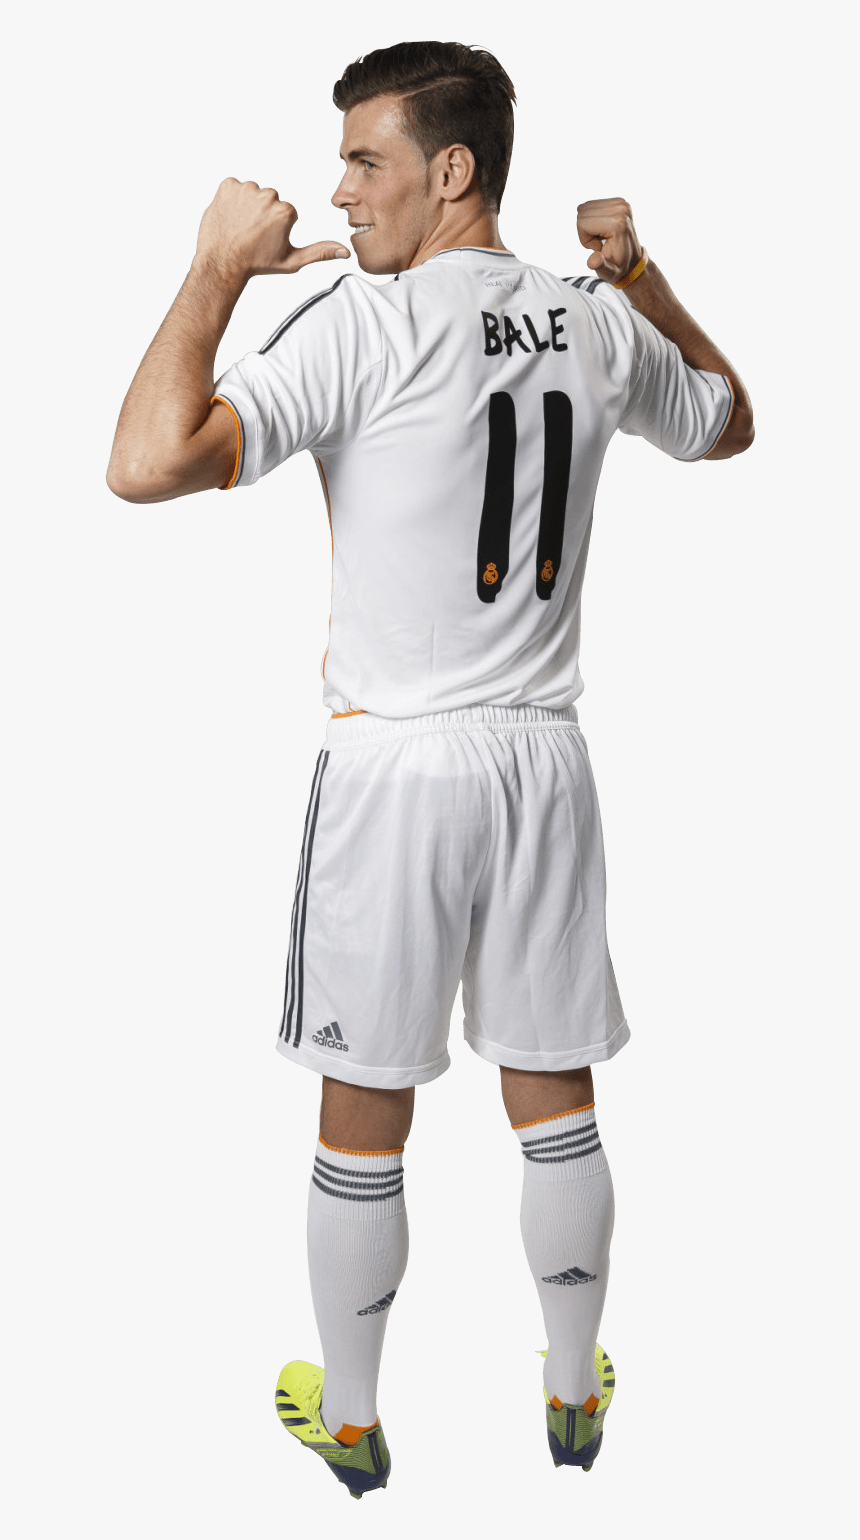 Gareth Bale Eleven - Gareth Bale Png Back, Transparent Png, Free Download